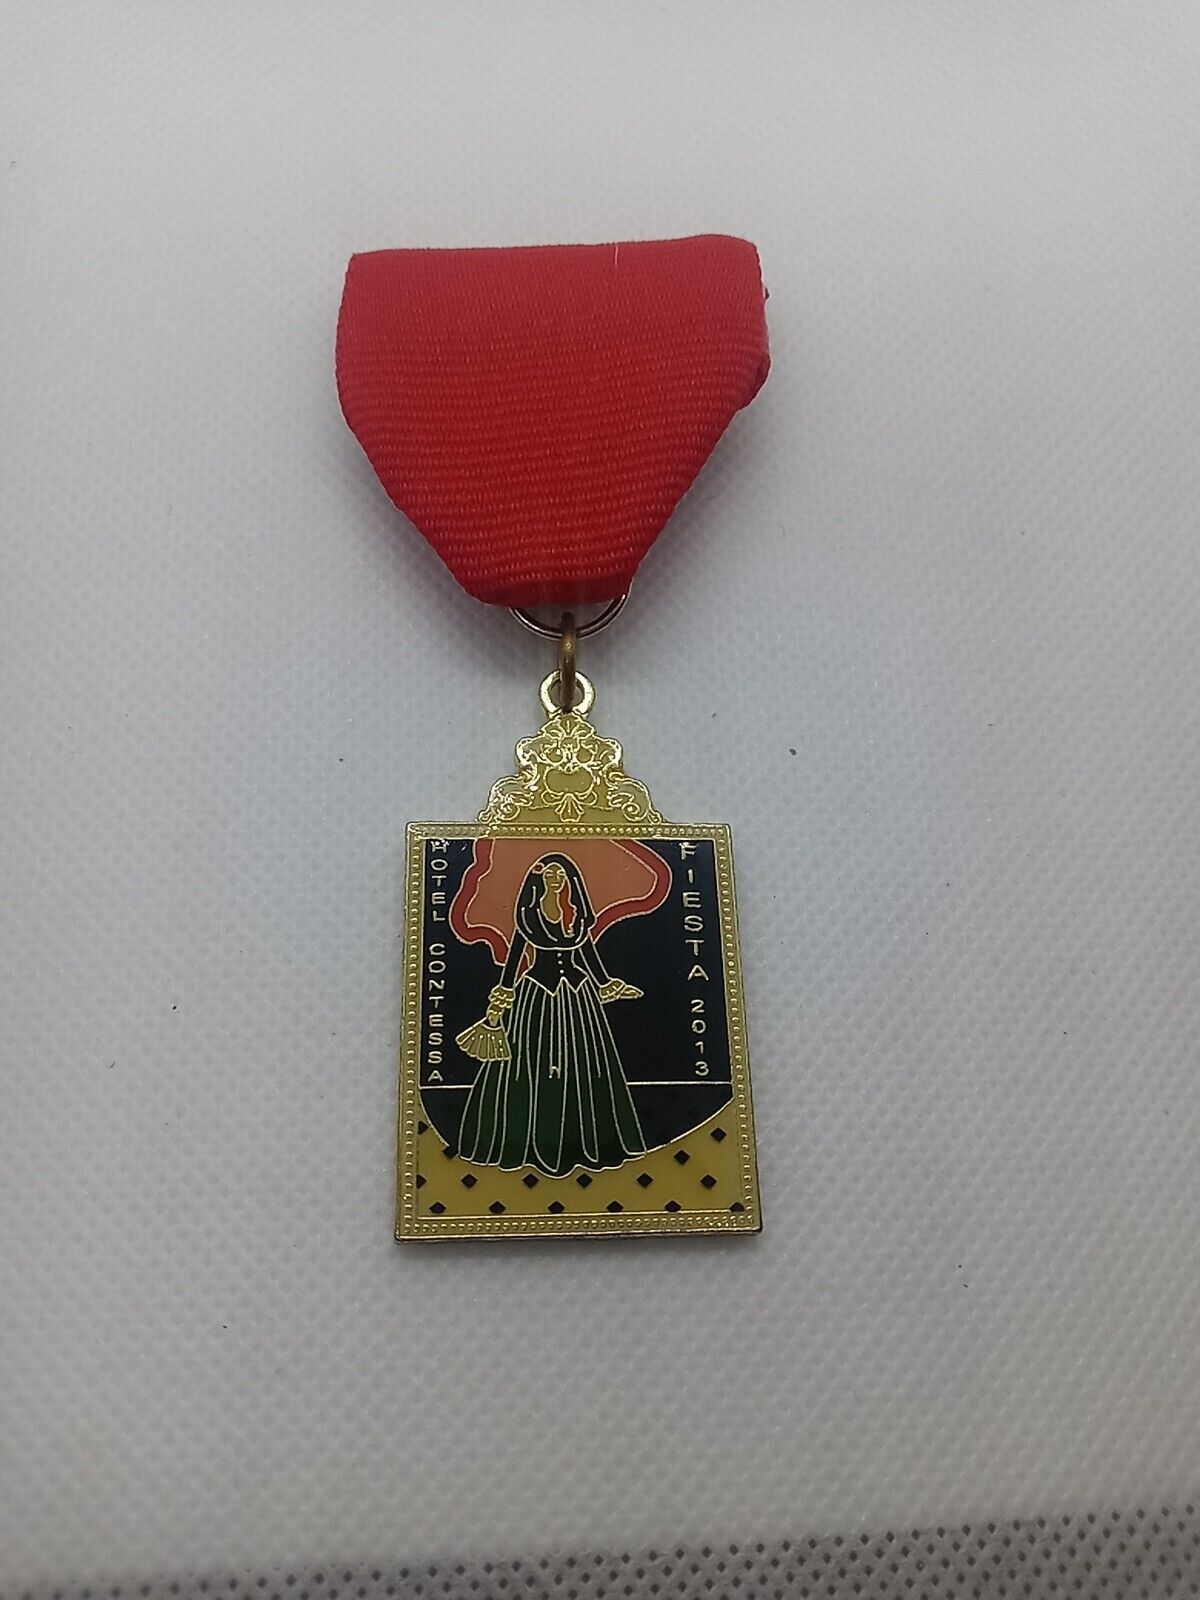 2013 Hotel Contessa Fiesta Medal San Antonio